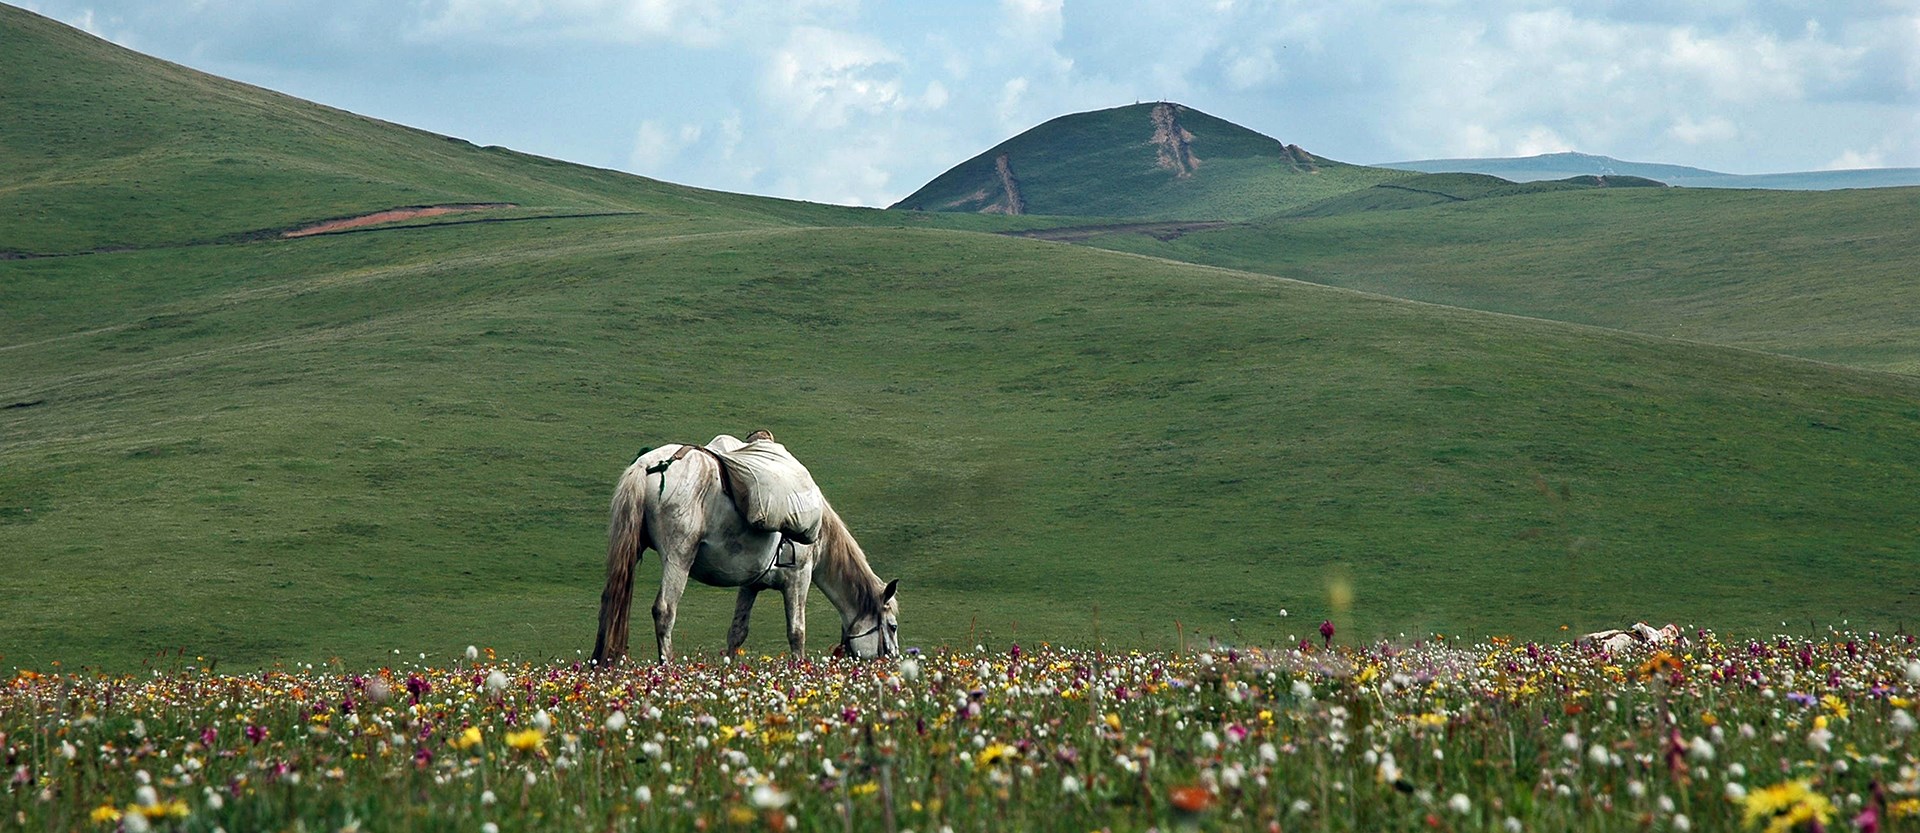 Pferdereitenreisen in Tibetischen Gebieten Kham und Amdo